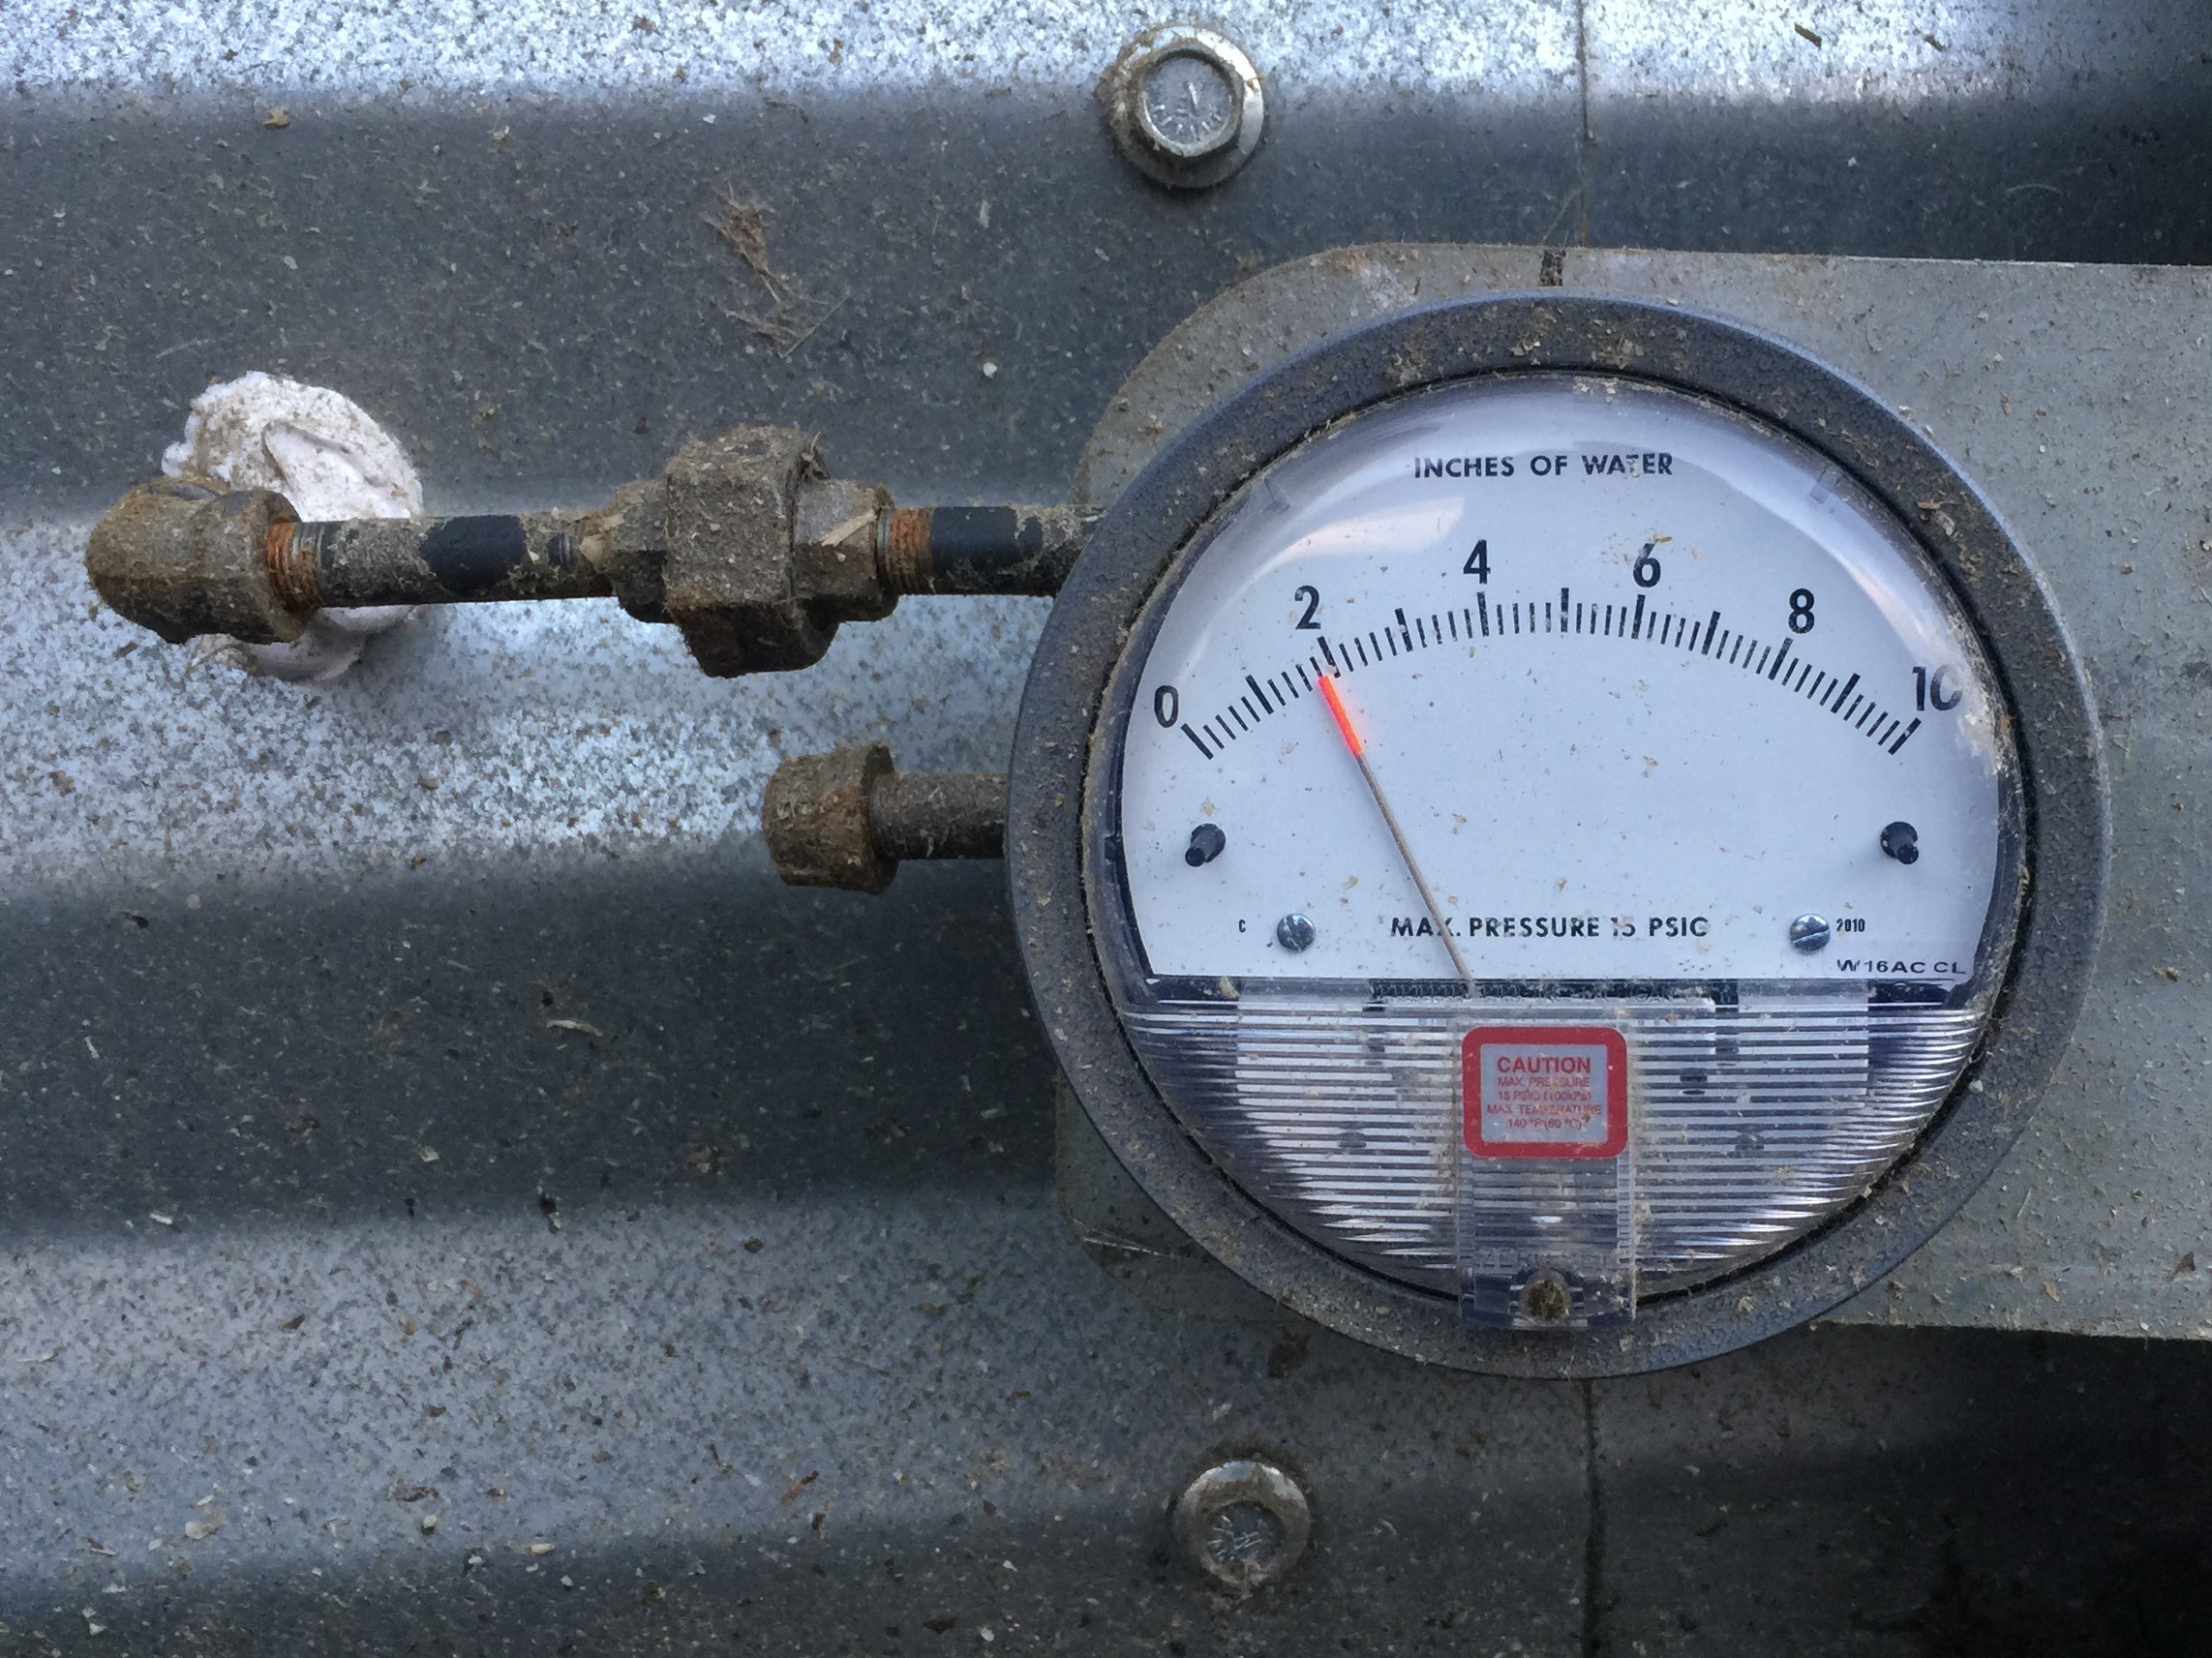 La photo montre un manomètre (indicateur de pression) installé sur un silo à grains, qui sert à mesurer la pression statique créée par le ventilateur. Le manomètre est rond et doté d’une aiguille qui mesure la pression en pouces de colonne d’eau.